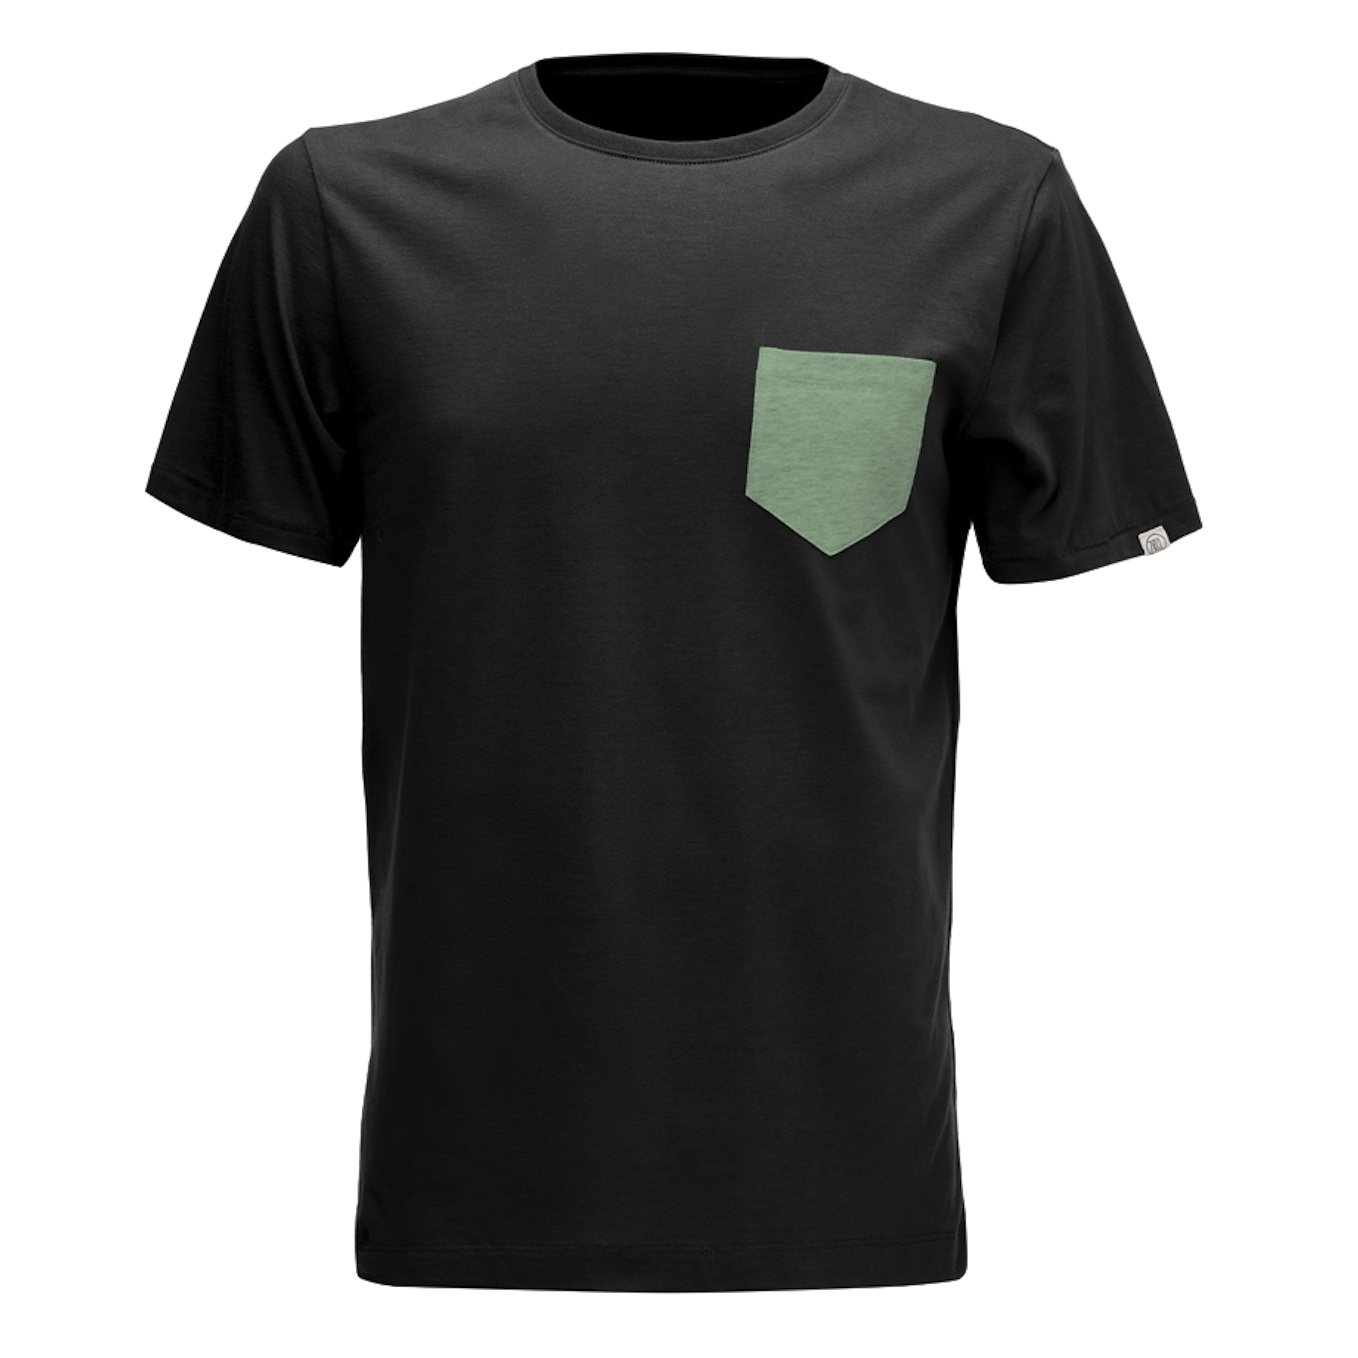 ZRCL ZRCL, M Pocket T-Shirt, black, M